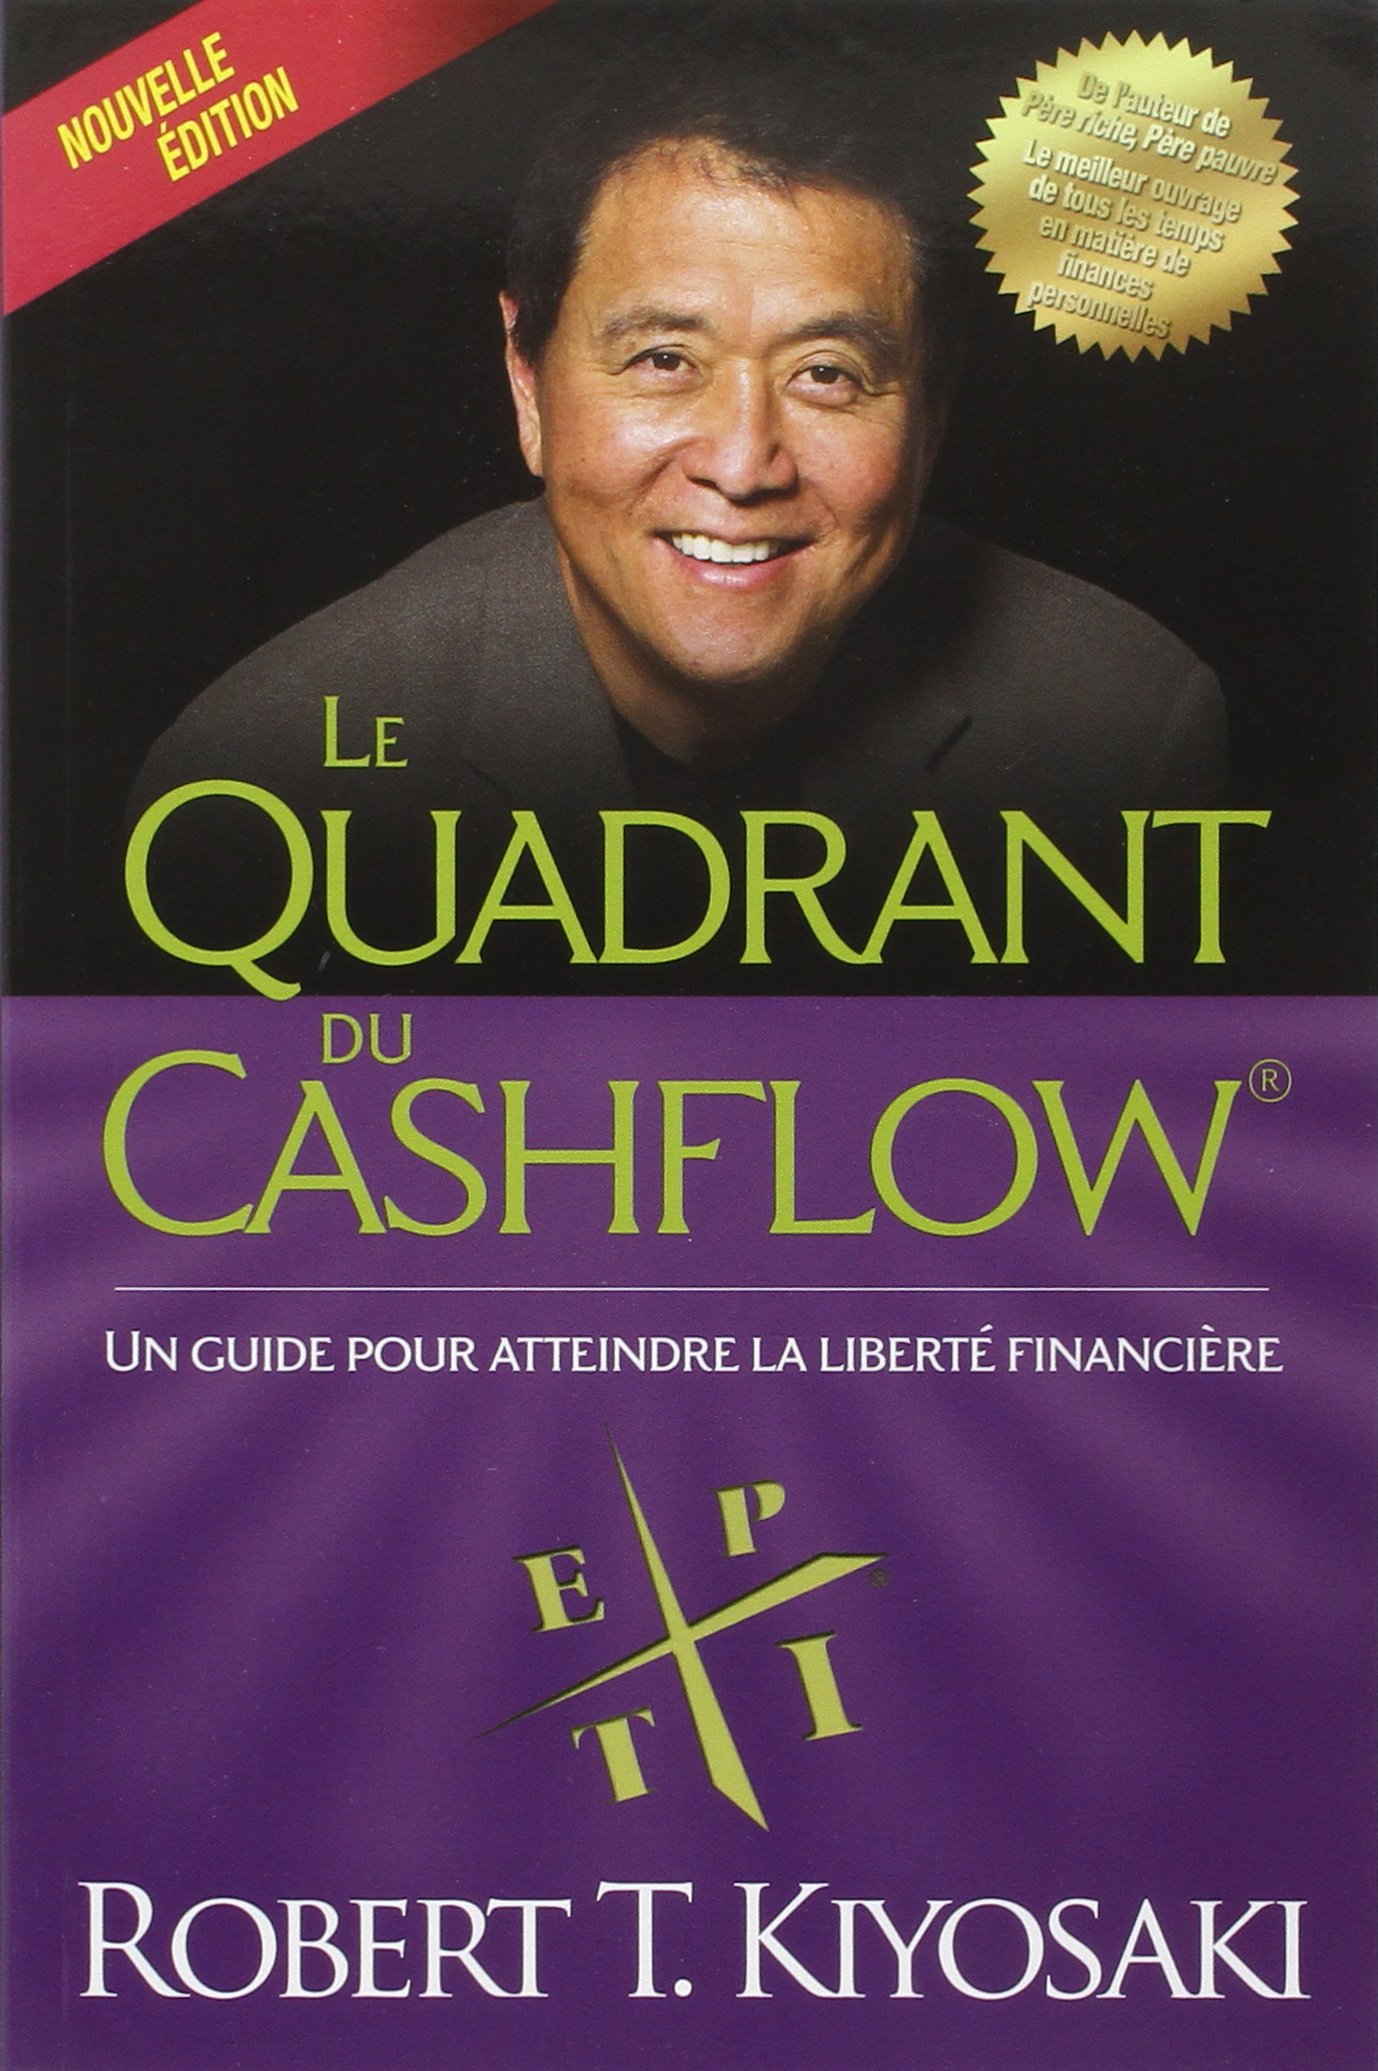 pdf cashflow quadrant